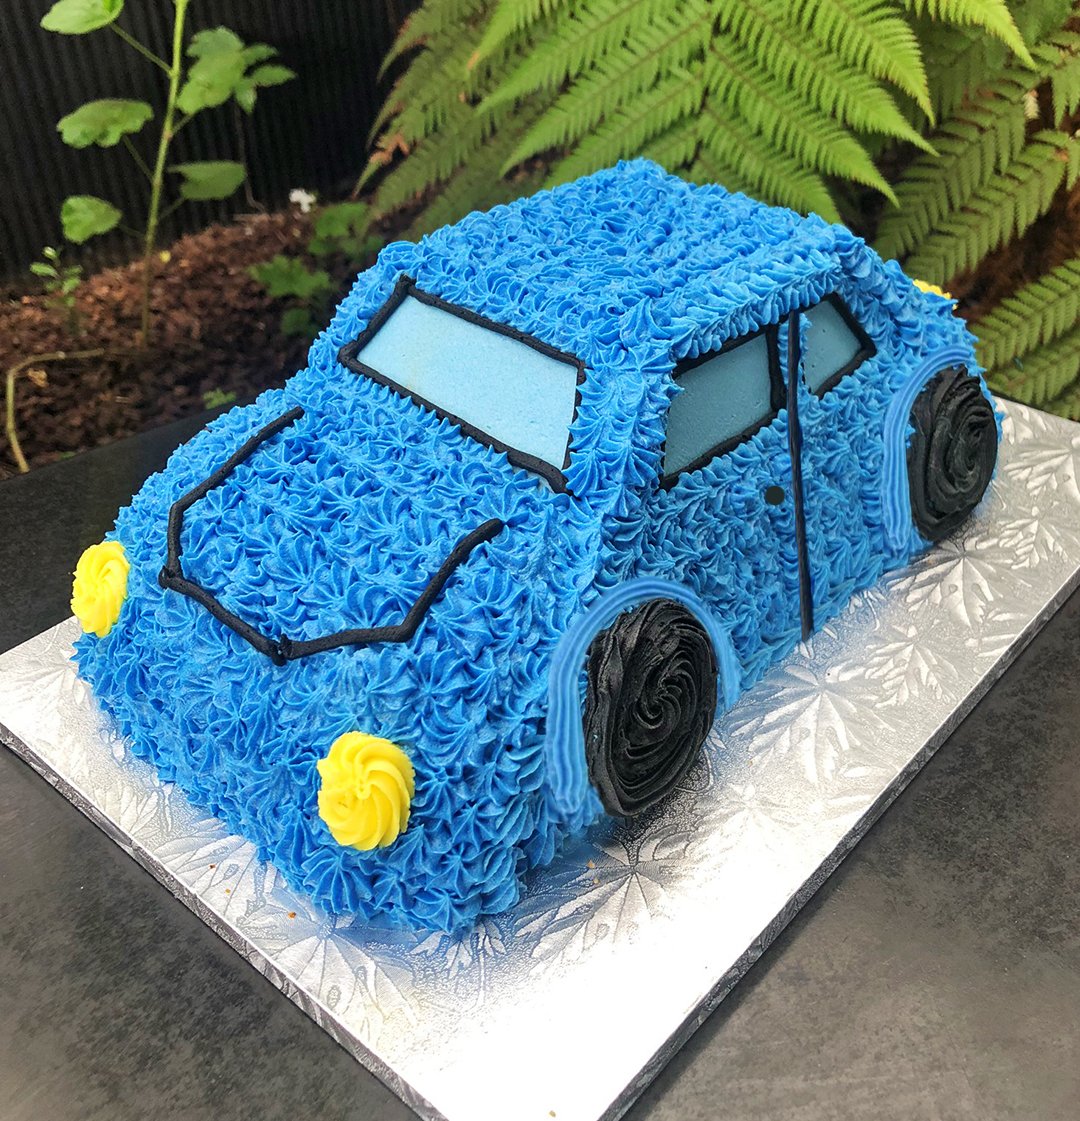 3D Lambo Cake - My Bake Studio